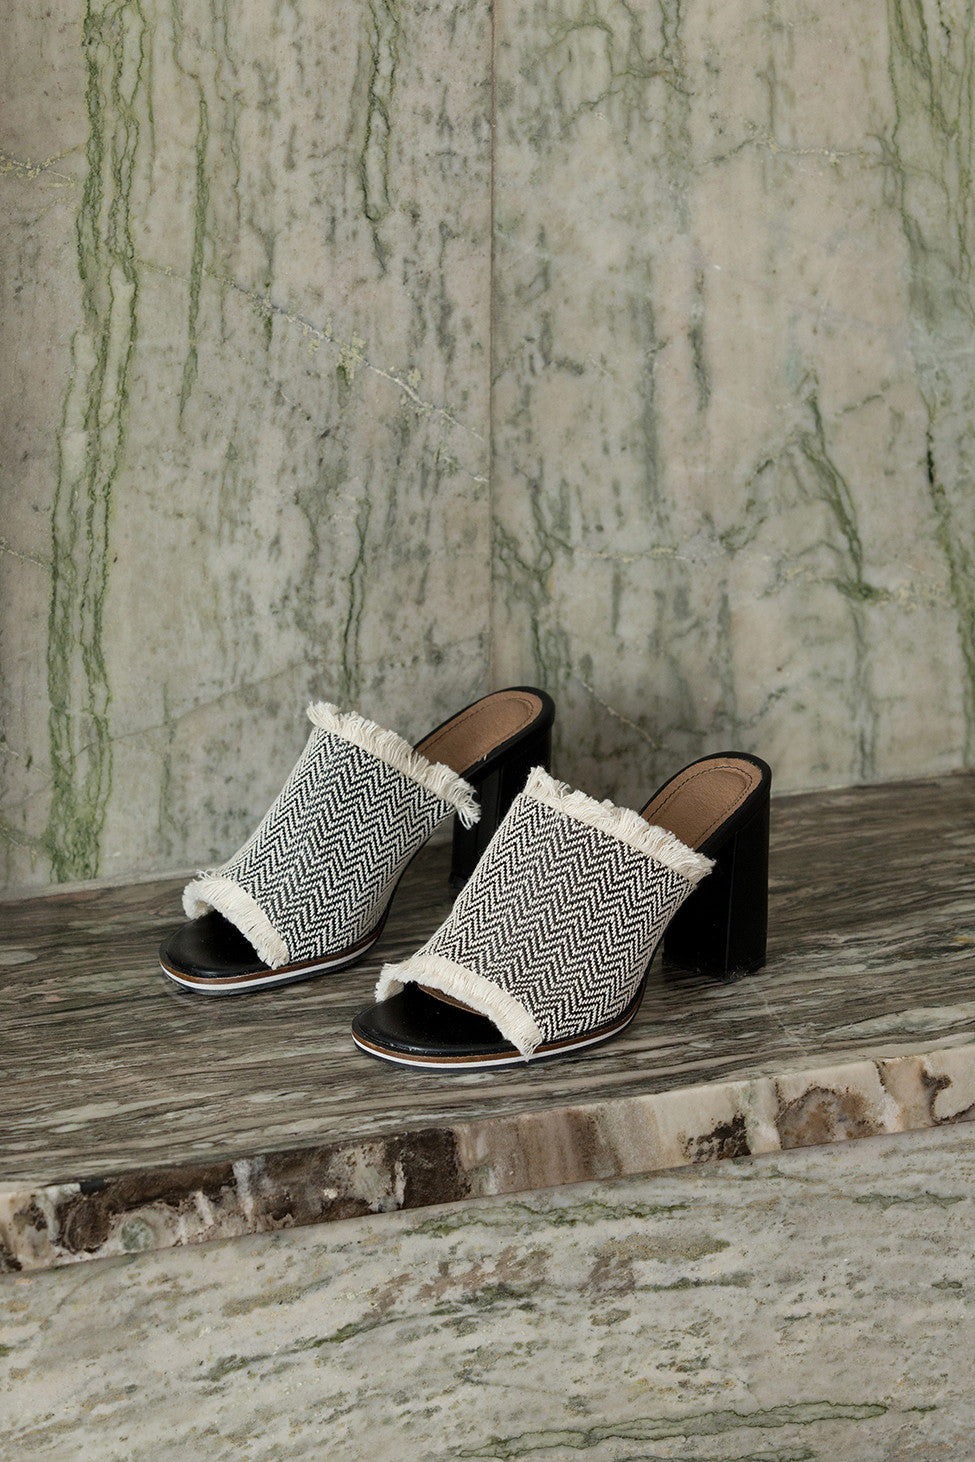 The Brioni sandal in Black-and-White chevron pattern. Open toe. Wool carpet fiber upper with tassel detailing. Slip-on design.